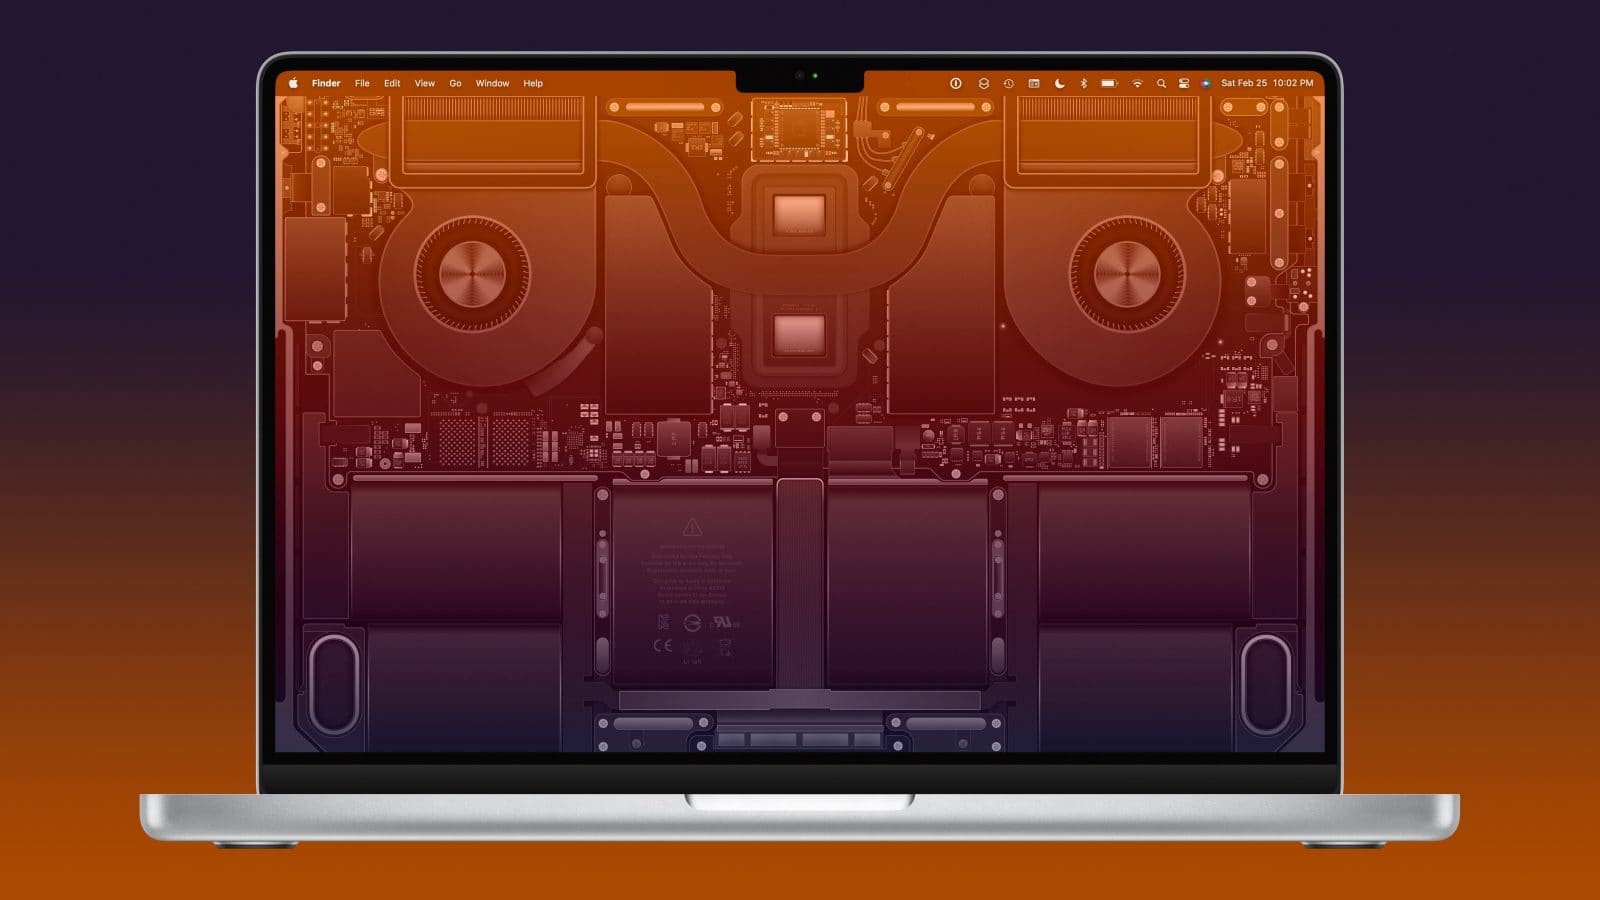 Hình nền cho Mac đẹp và chất lượng cao, chủ đề sơ đồ nội thất của MacBook Pro M2